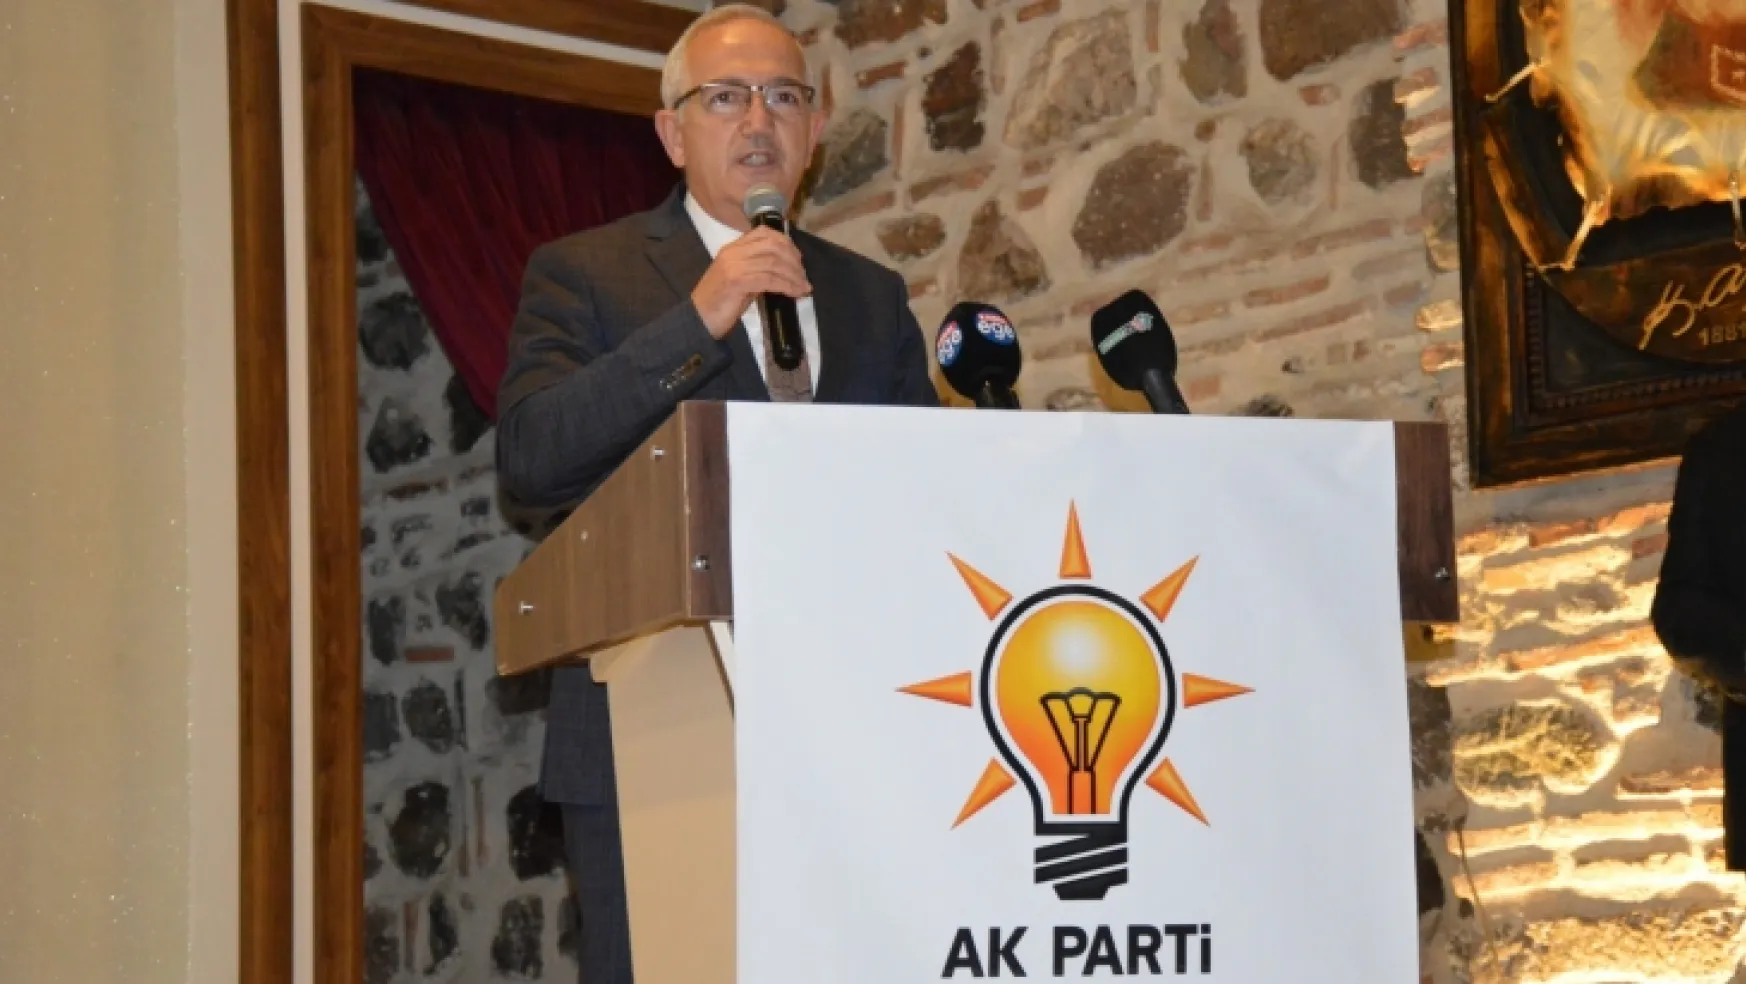 AK Parti Manisa Milletvekili İsmail Bilen basın açıklaması